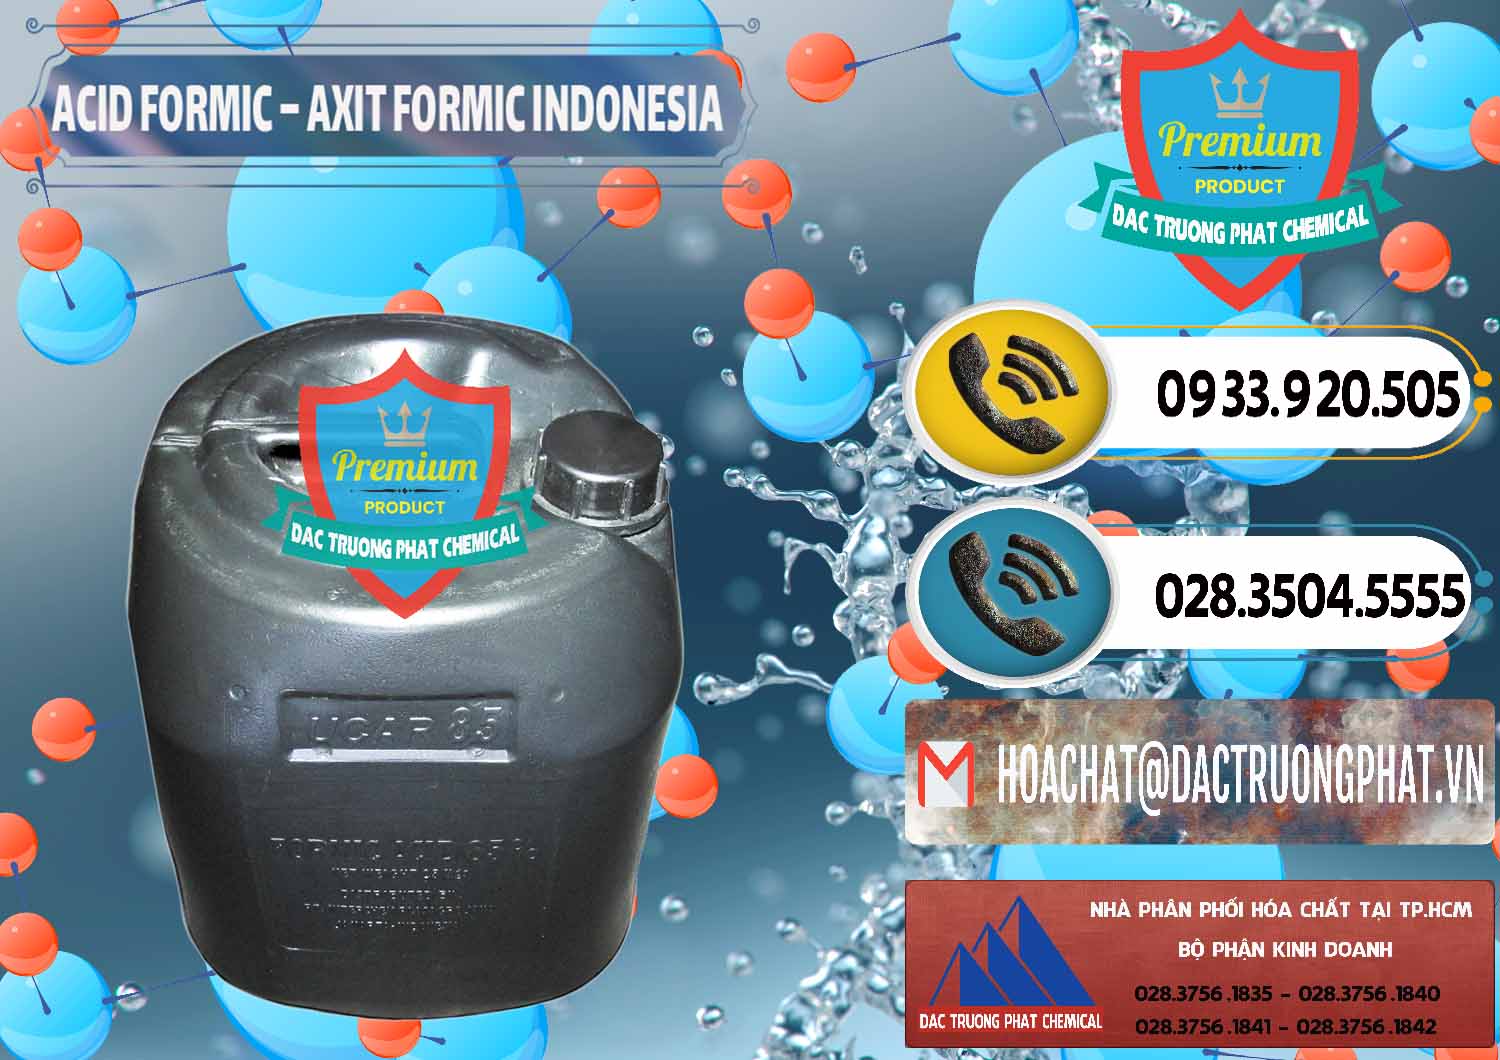 Bán ( phân phối ) Acid Formic - Axit Formic Indonesia - 0026 - Cty phân phối & cung cấp hóa chất tại TP.HCM - hoachatdetnhuom.vn